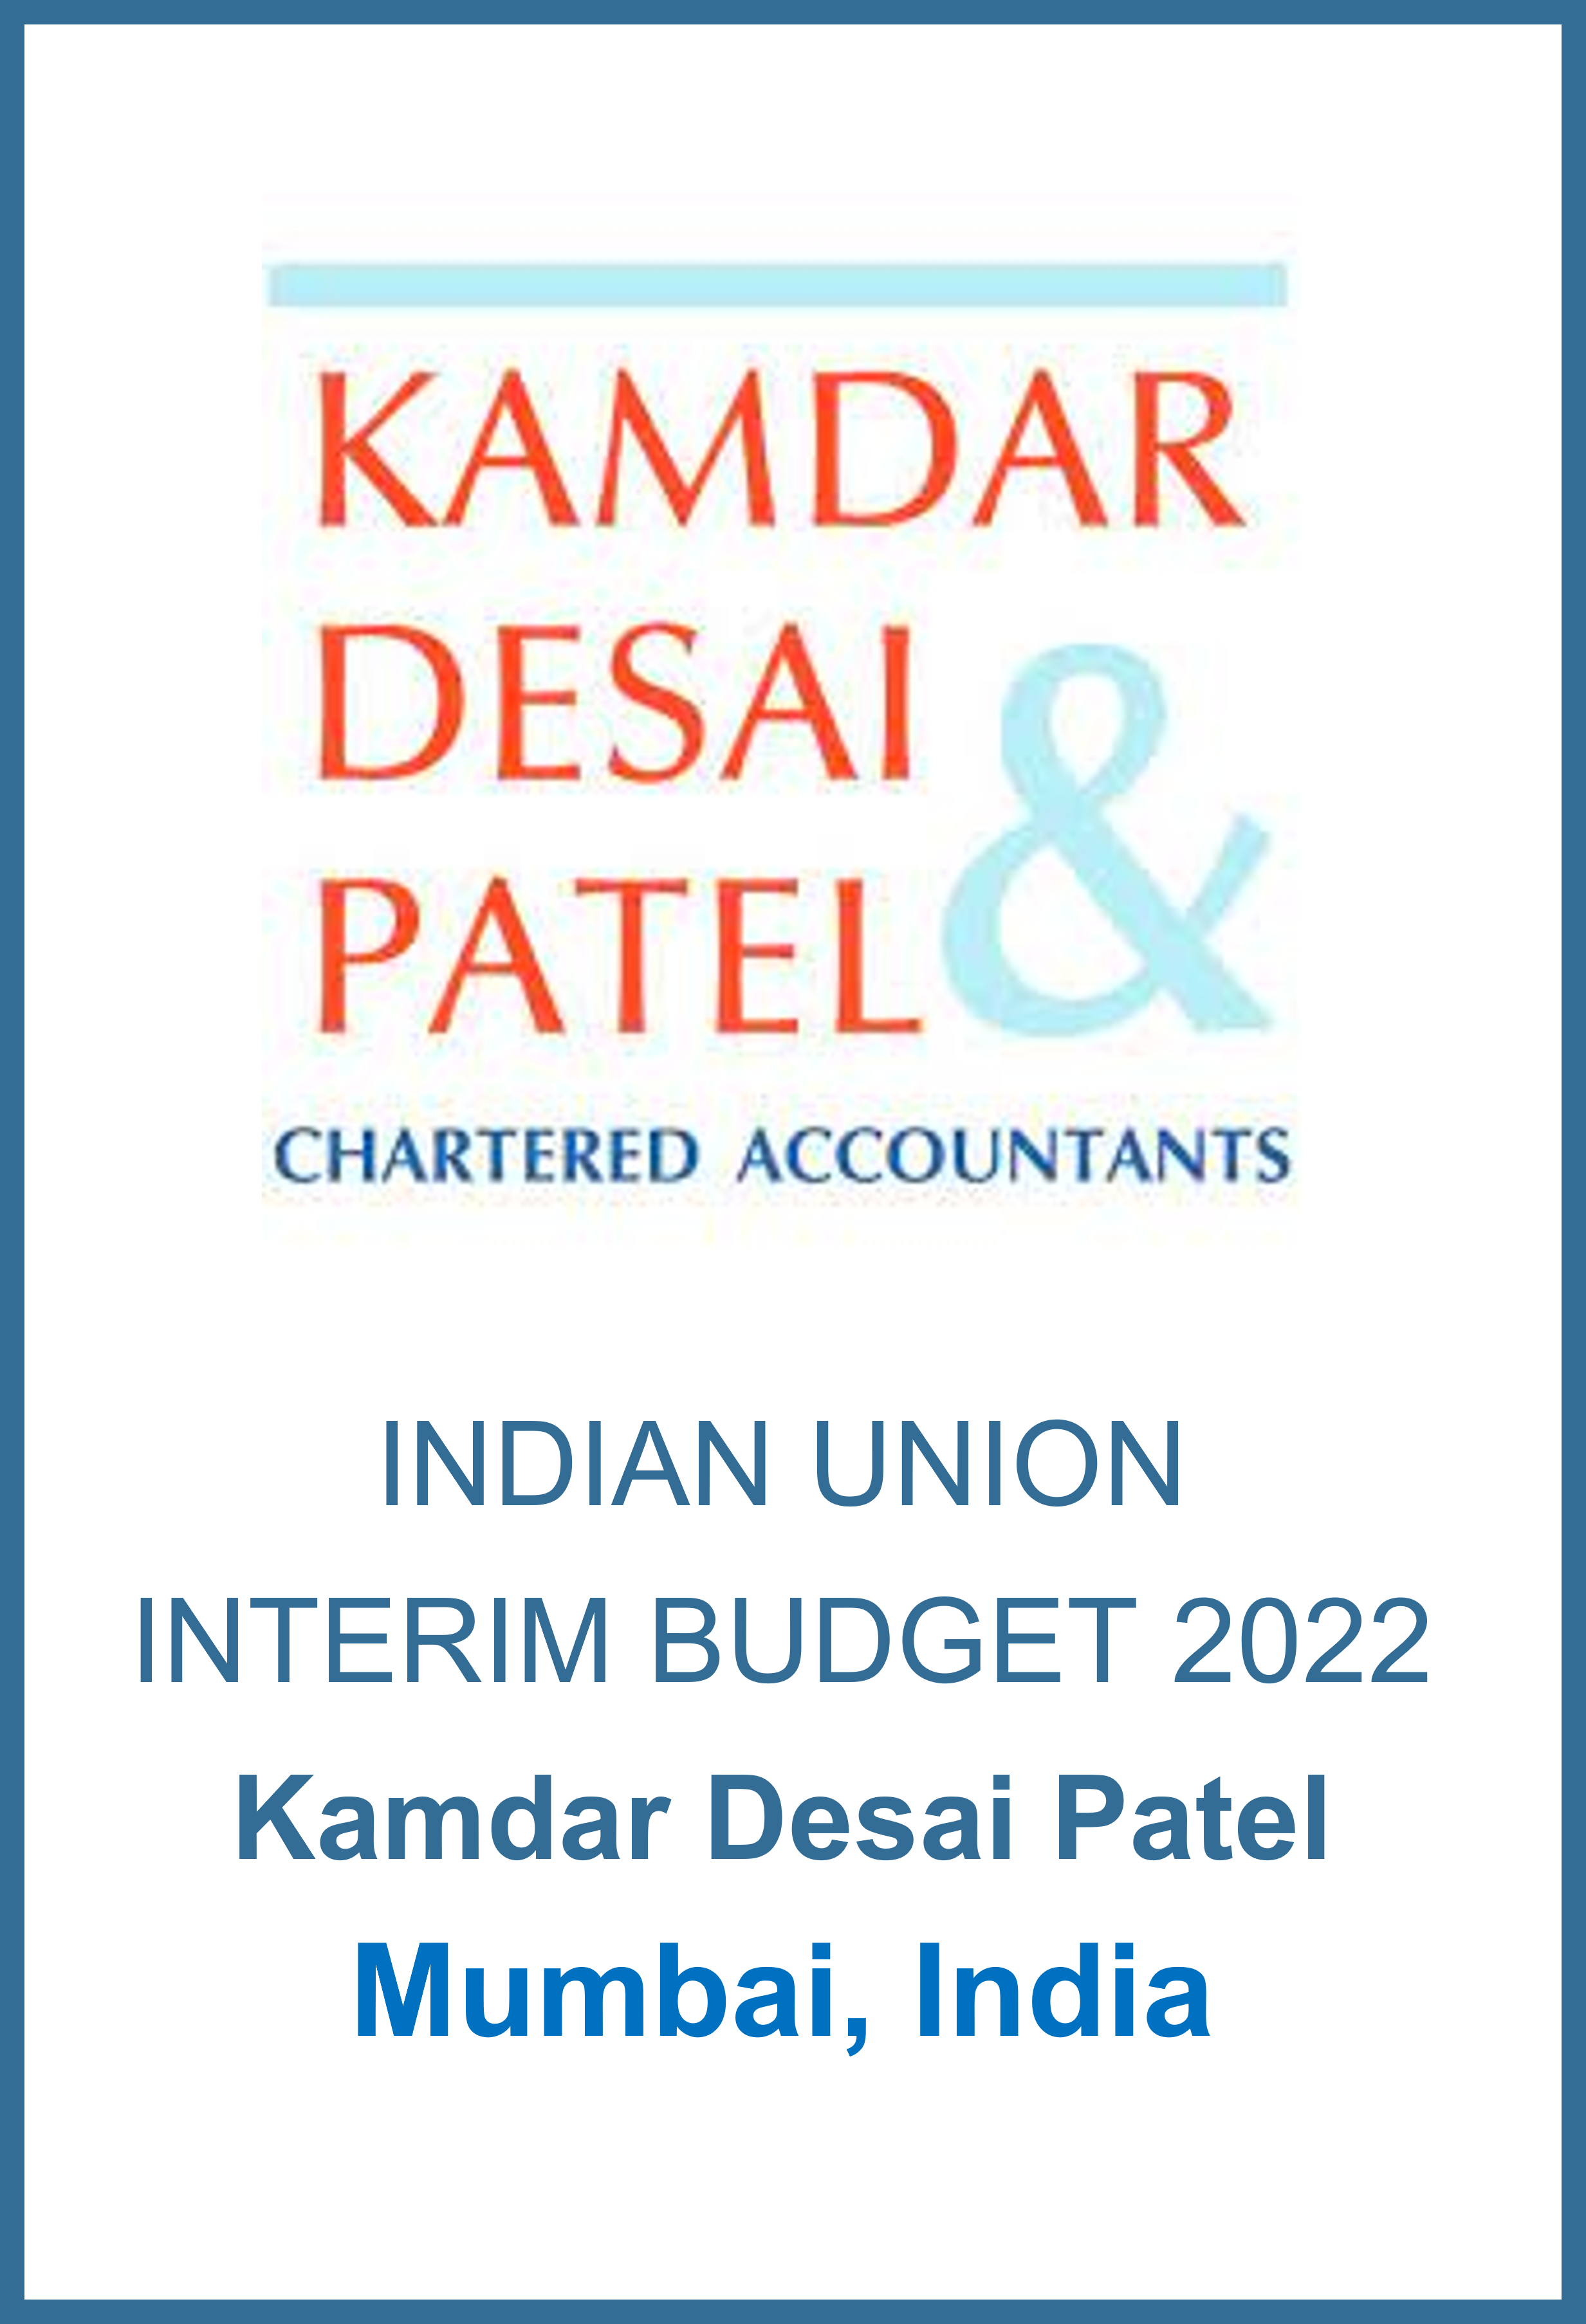 kamdar-desai-and-patel_budget-2022.png